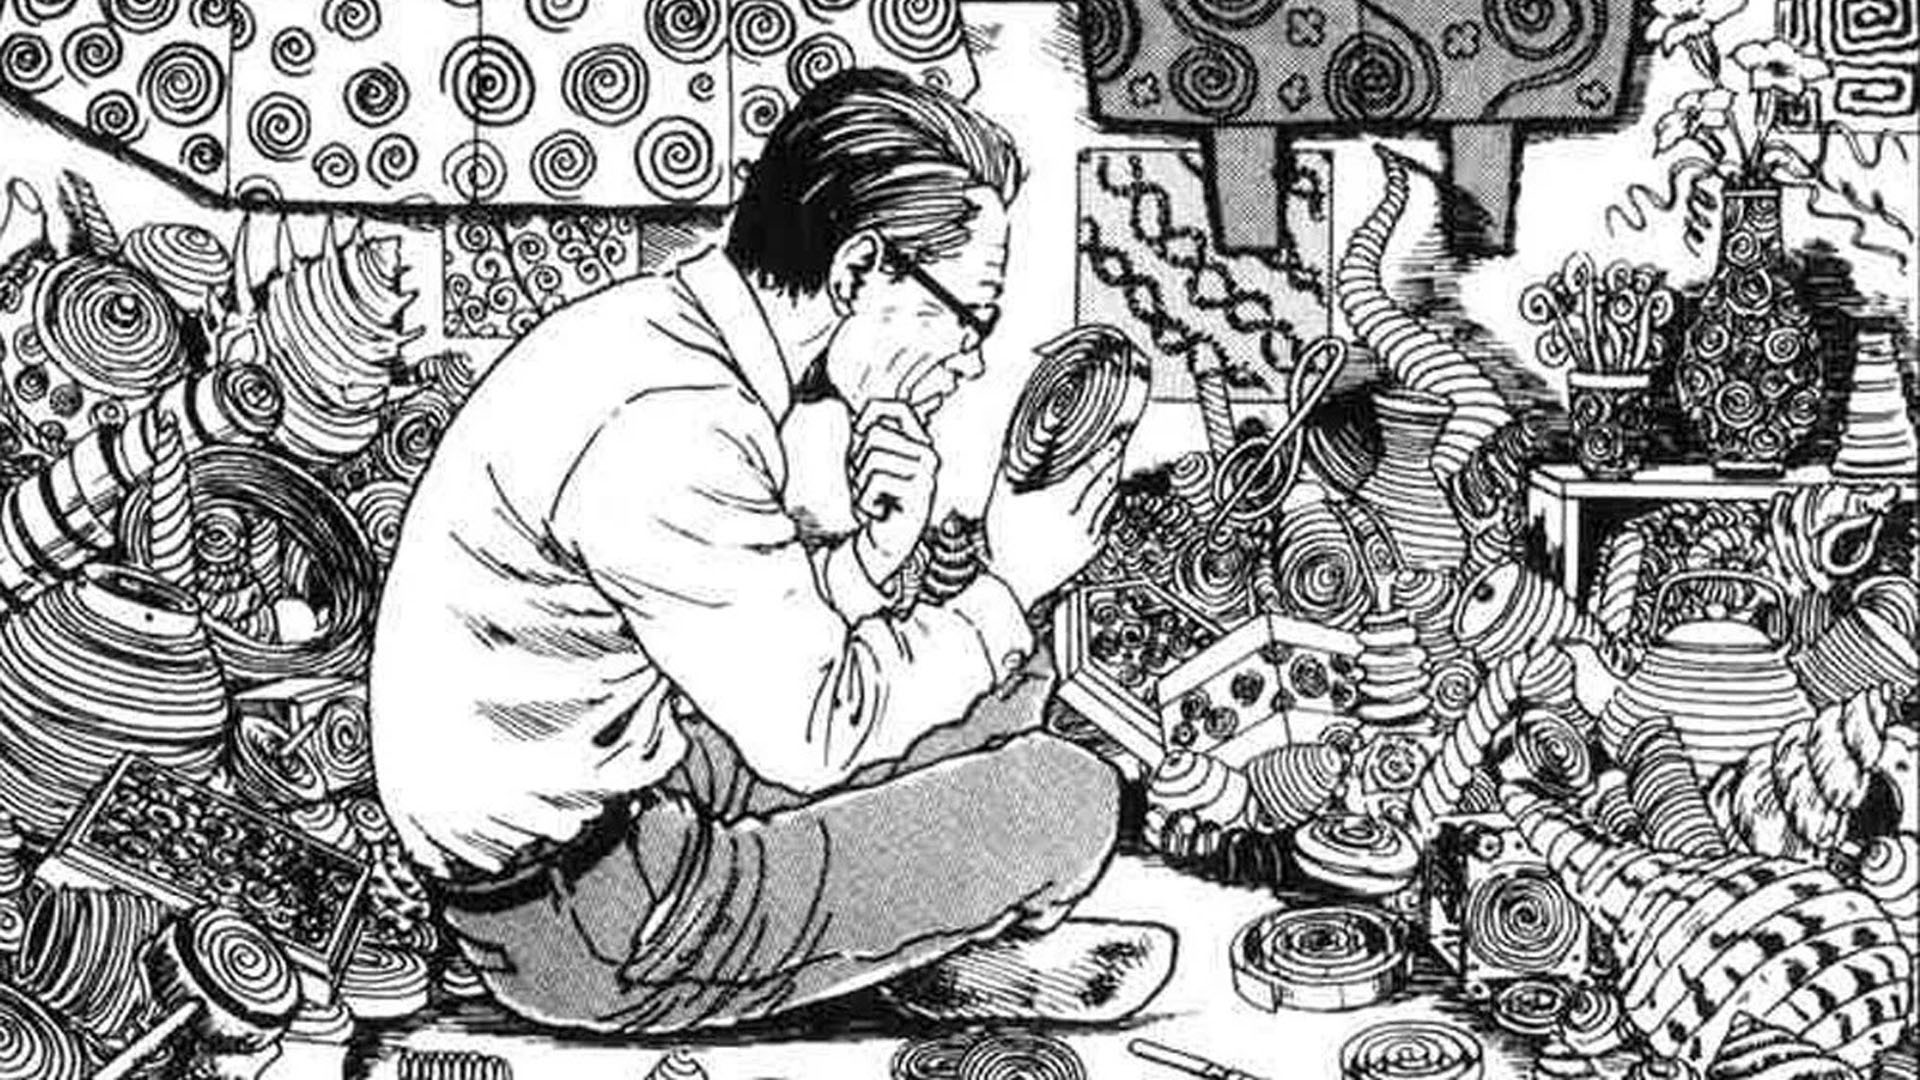 Uzumaki Anime: Junji Ito's Must-Watch Horror Manga